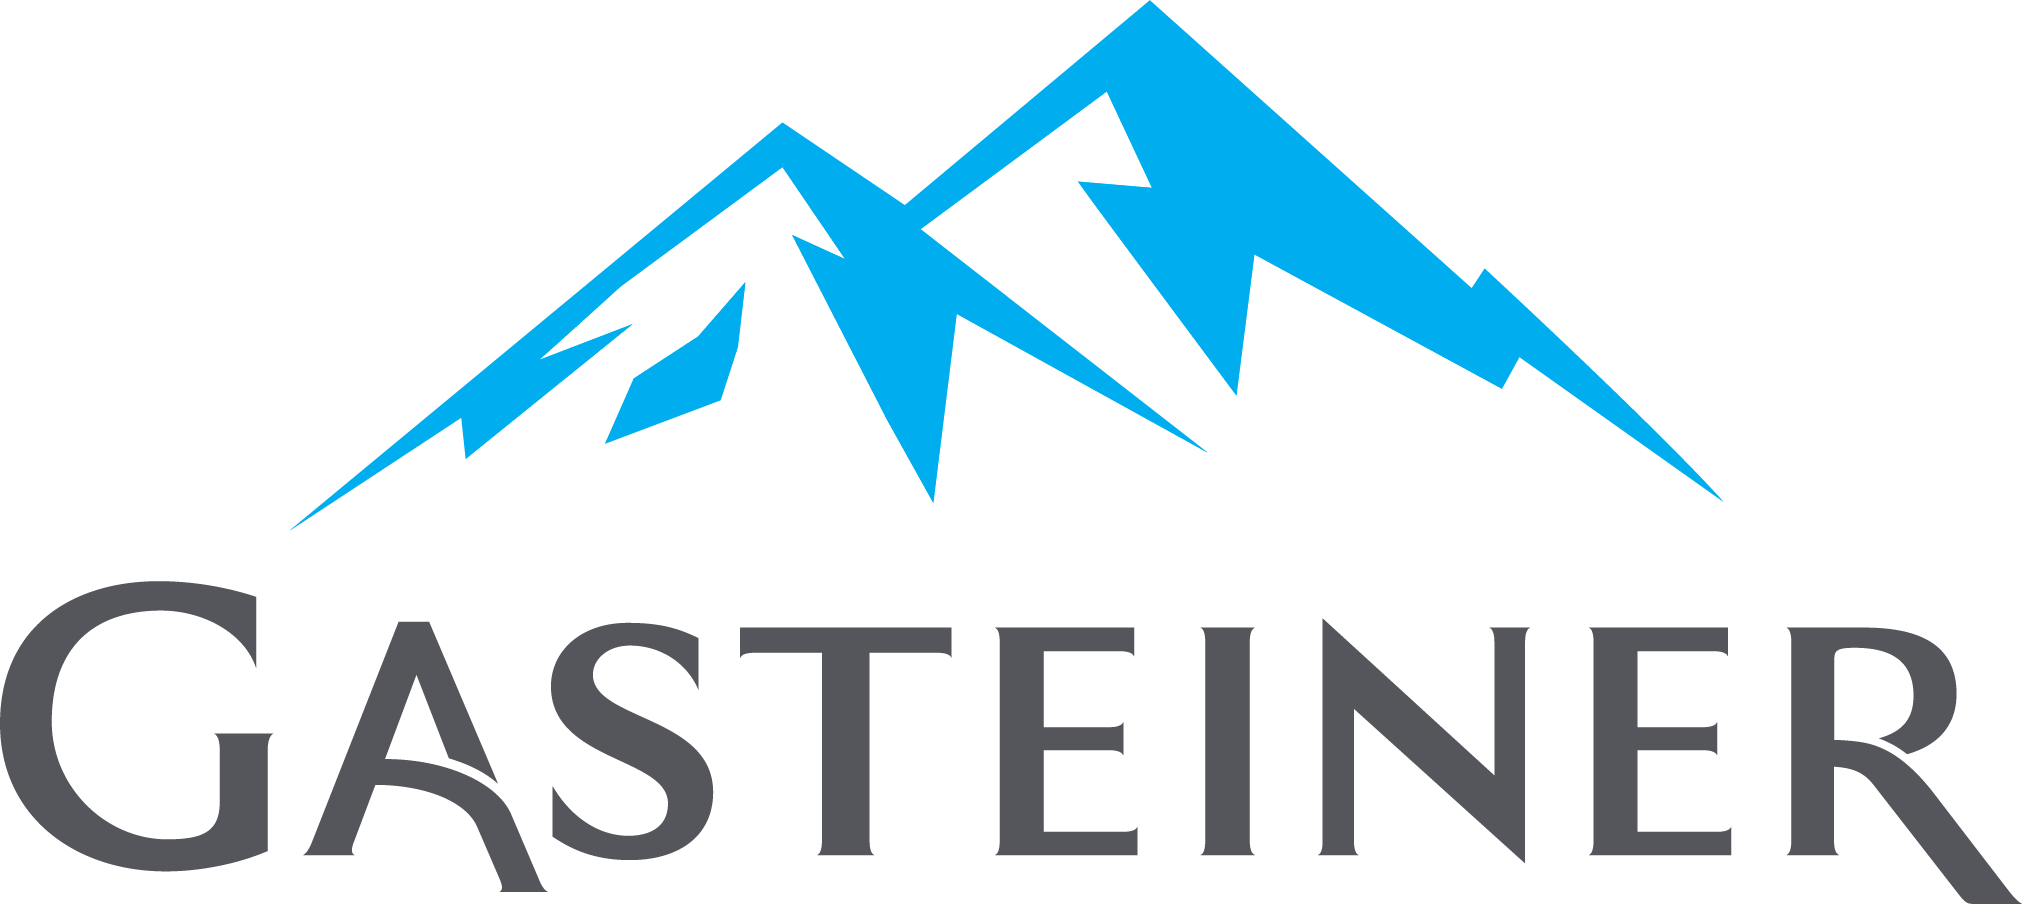 Logo von Gasteiner, einem kristallklaren, natürlichen Mineralwasser aus den Alpen